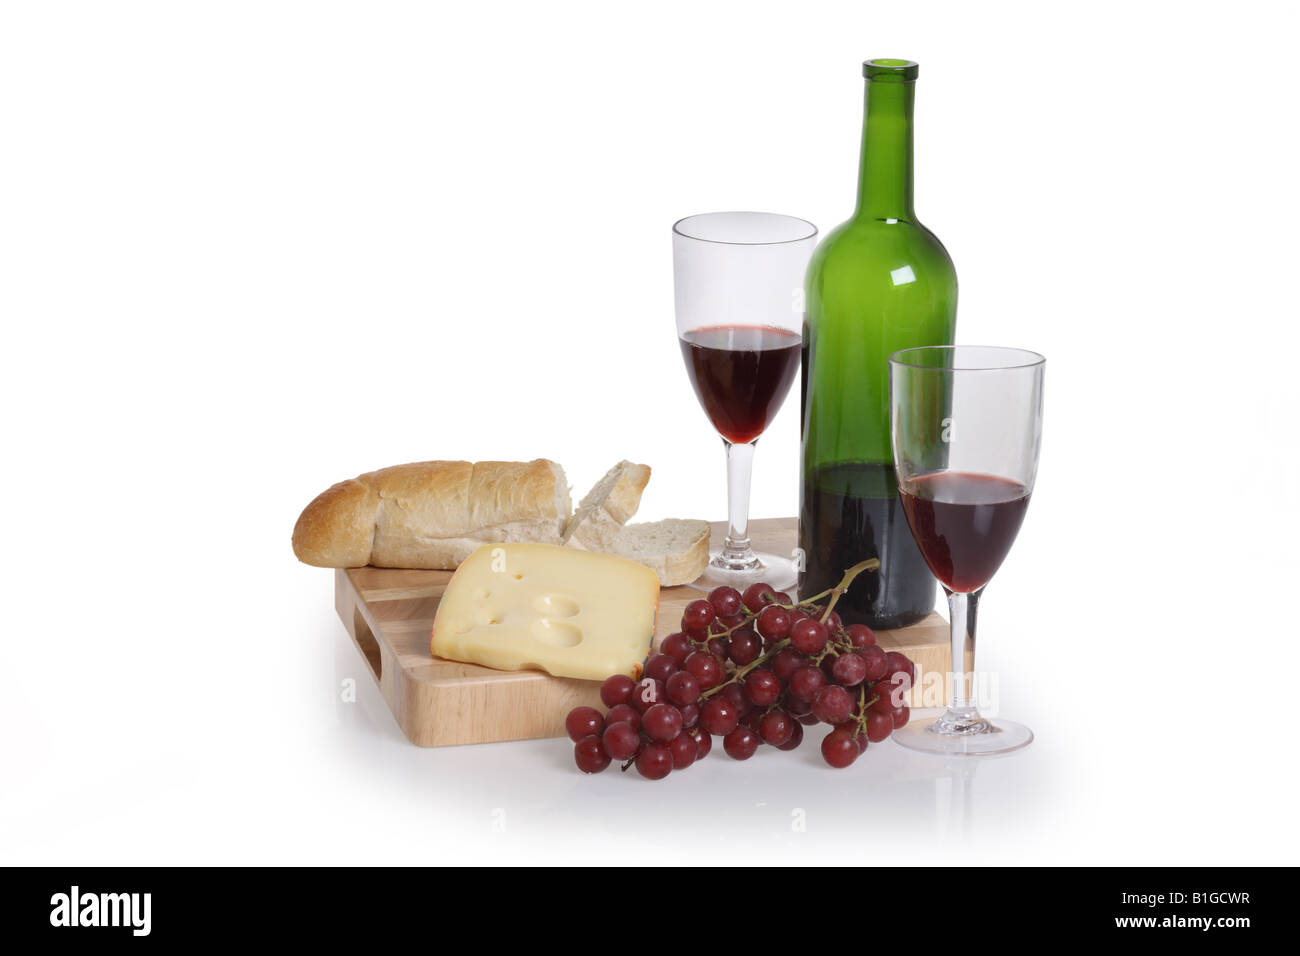 Bouteille de vin rouge 2 verres raisins fromage et pain découper sur fond blanc Banque D'Images